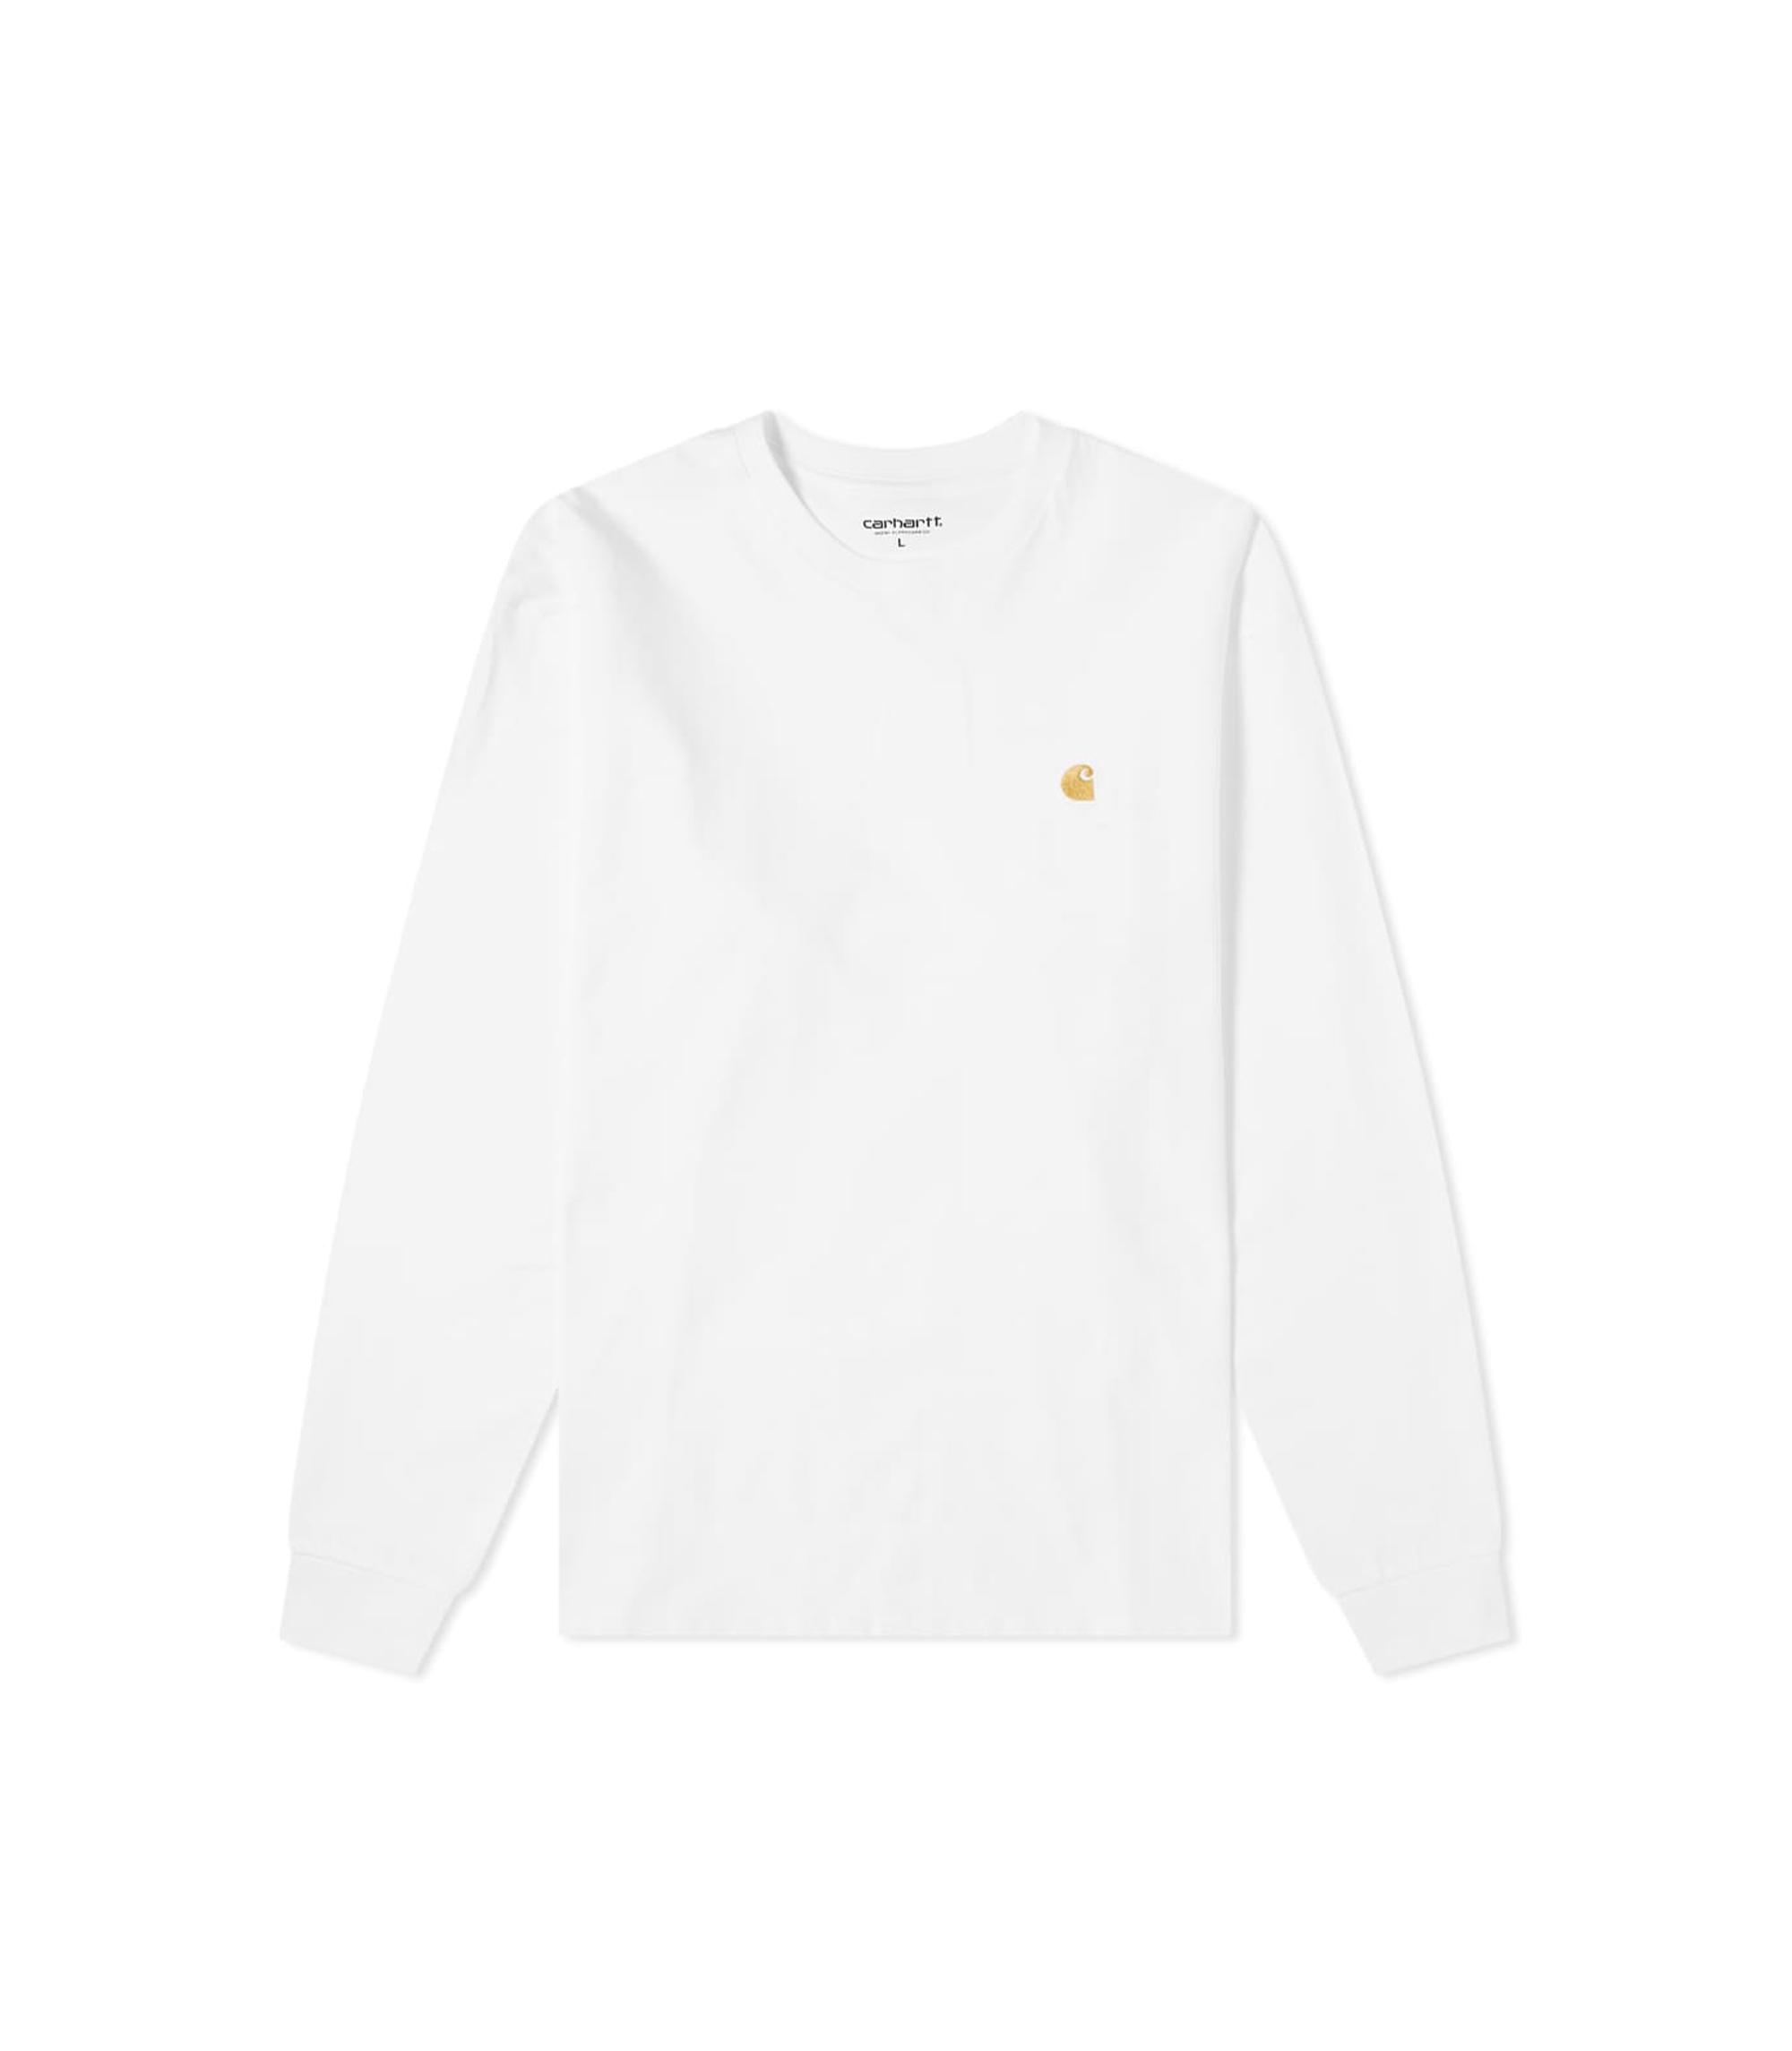 Chase L/S T-Shirt - White / Gold